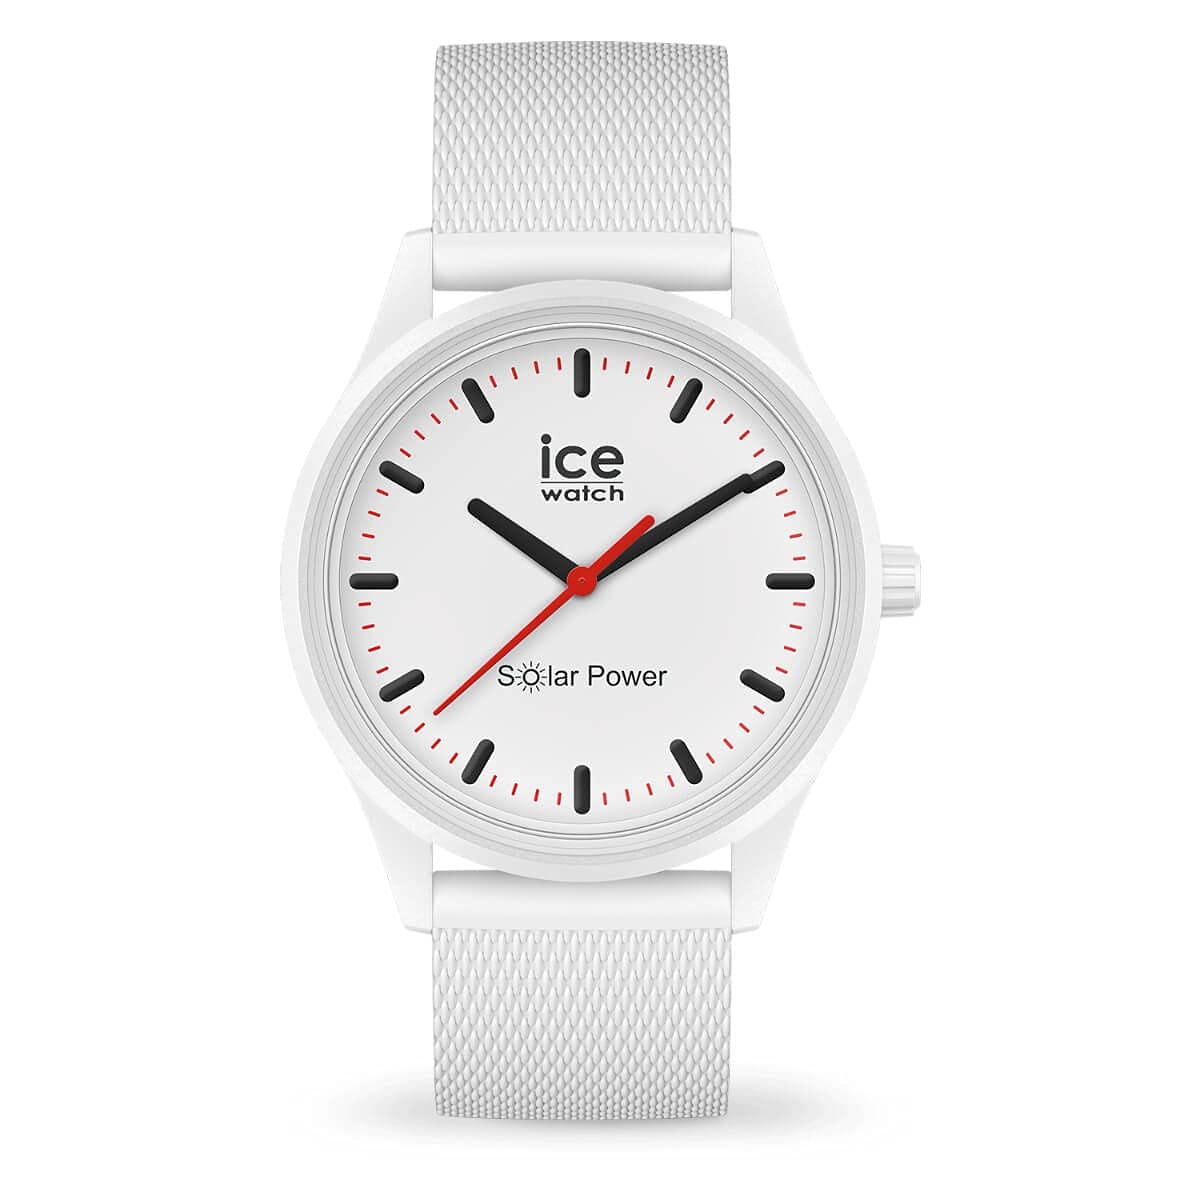 正規代理店 [Ice-watch]アイスウォッチ 時計 腕時計 太陽電池 メンズ 018390 ソーラー ICE solar power ポーラー ミディアム